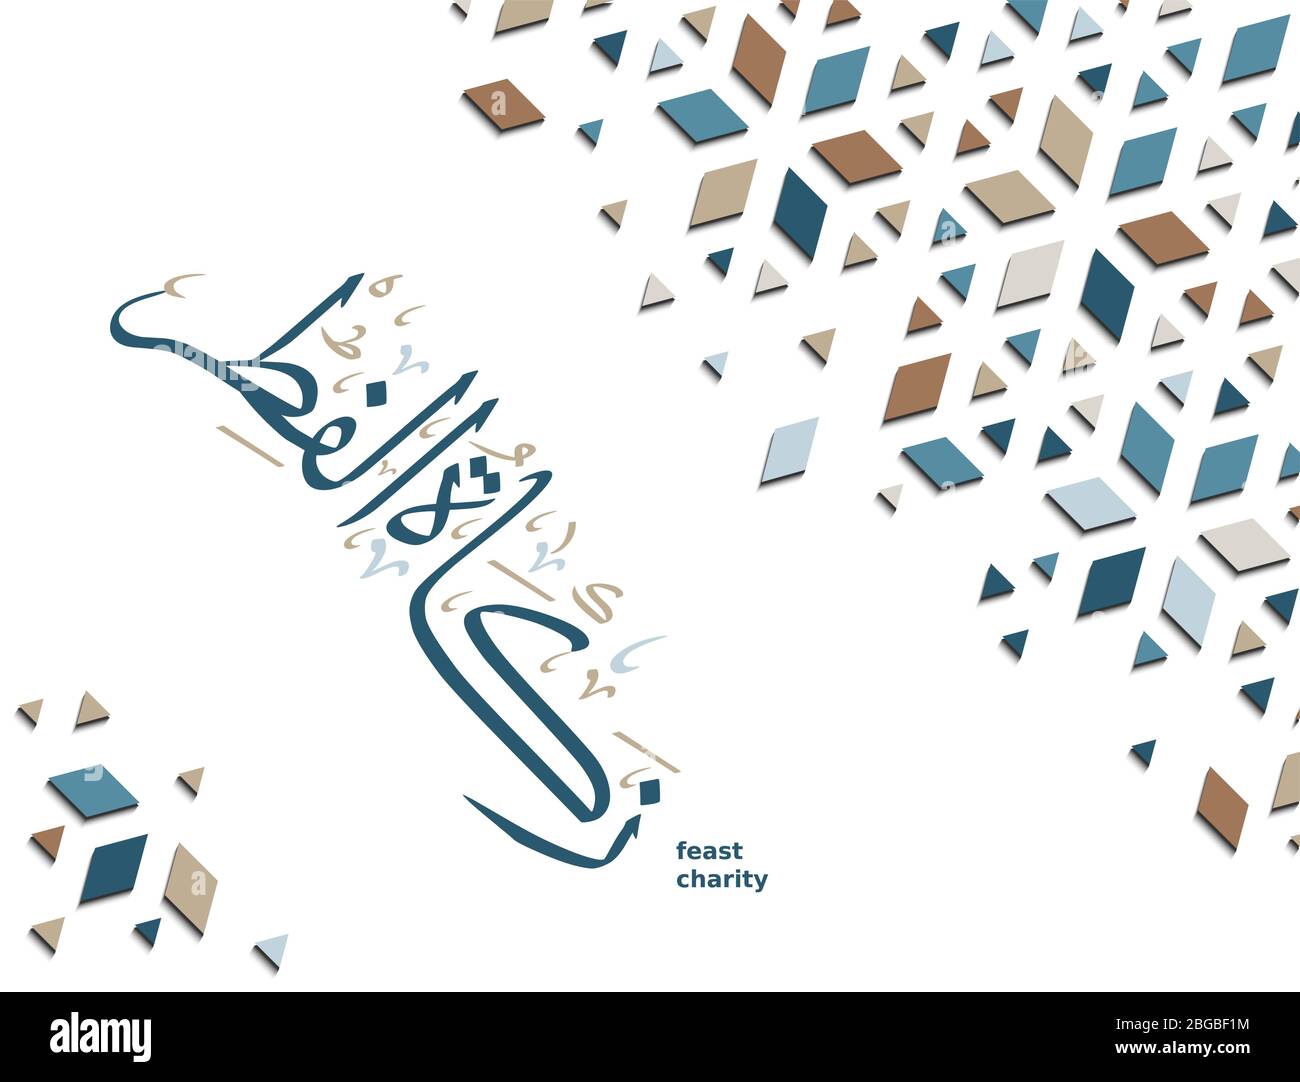 Arabische Kalligraphie bedeutet Fest Charity. Vektor-Karte Design für Zakat Al-fitr von Ramadan. Stock Vektor